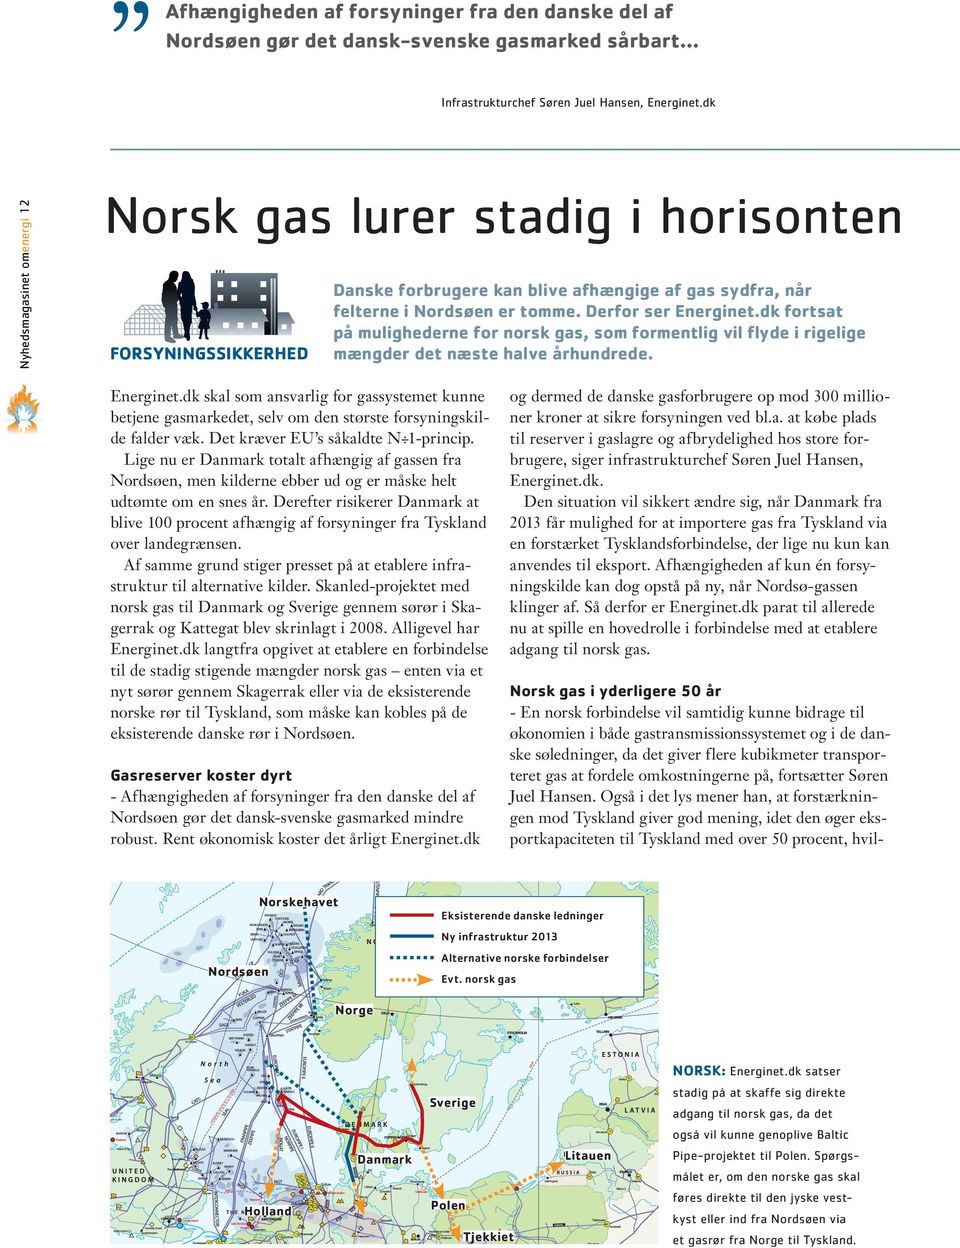 dk fortsat på mulighederne for norsk gas, som formentlig vil flyde i rigelige mængder det næste halve århundrede. Energinet.